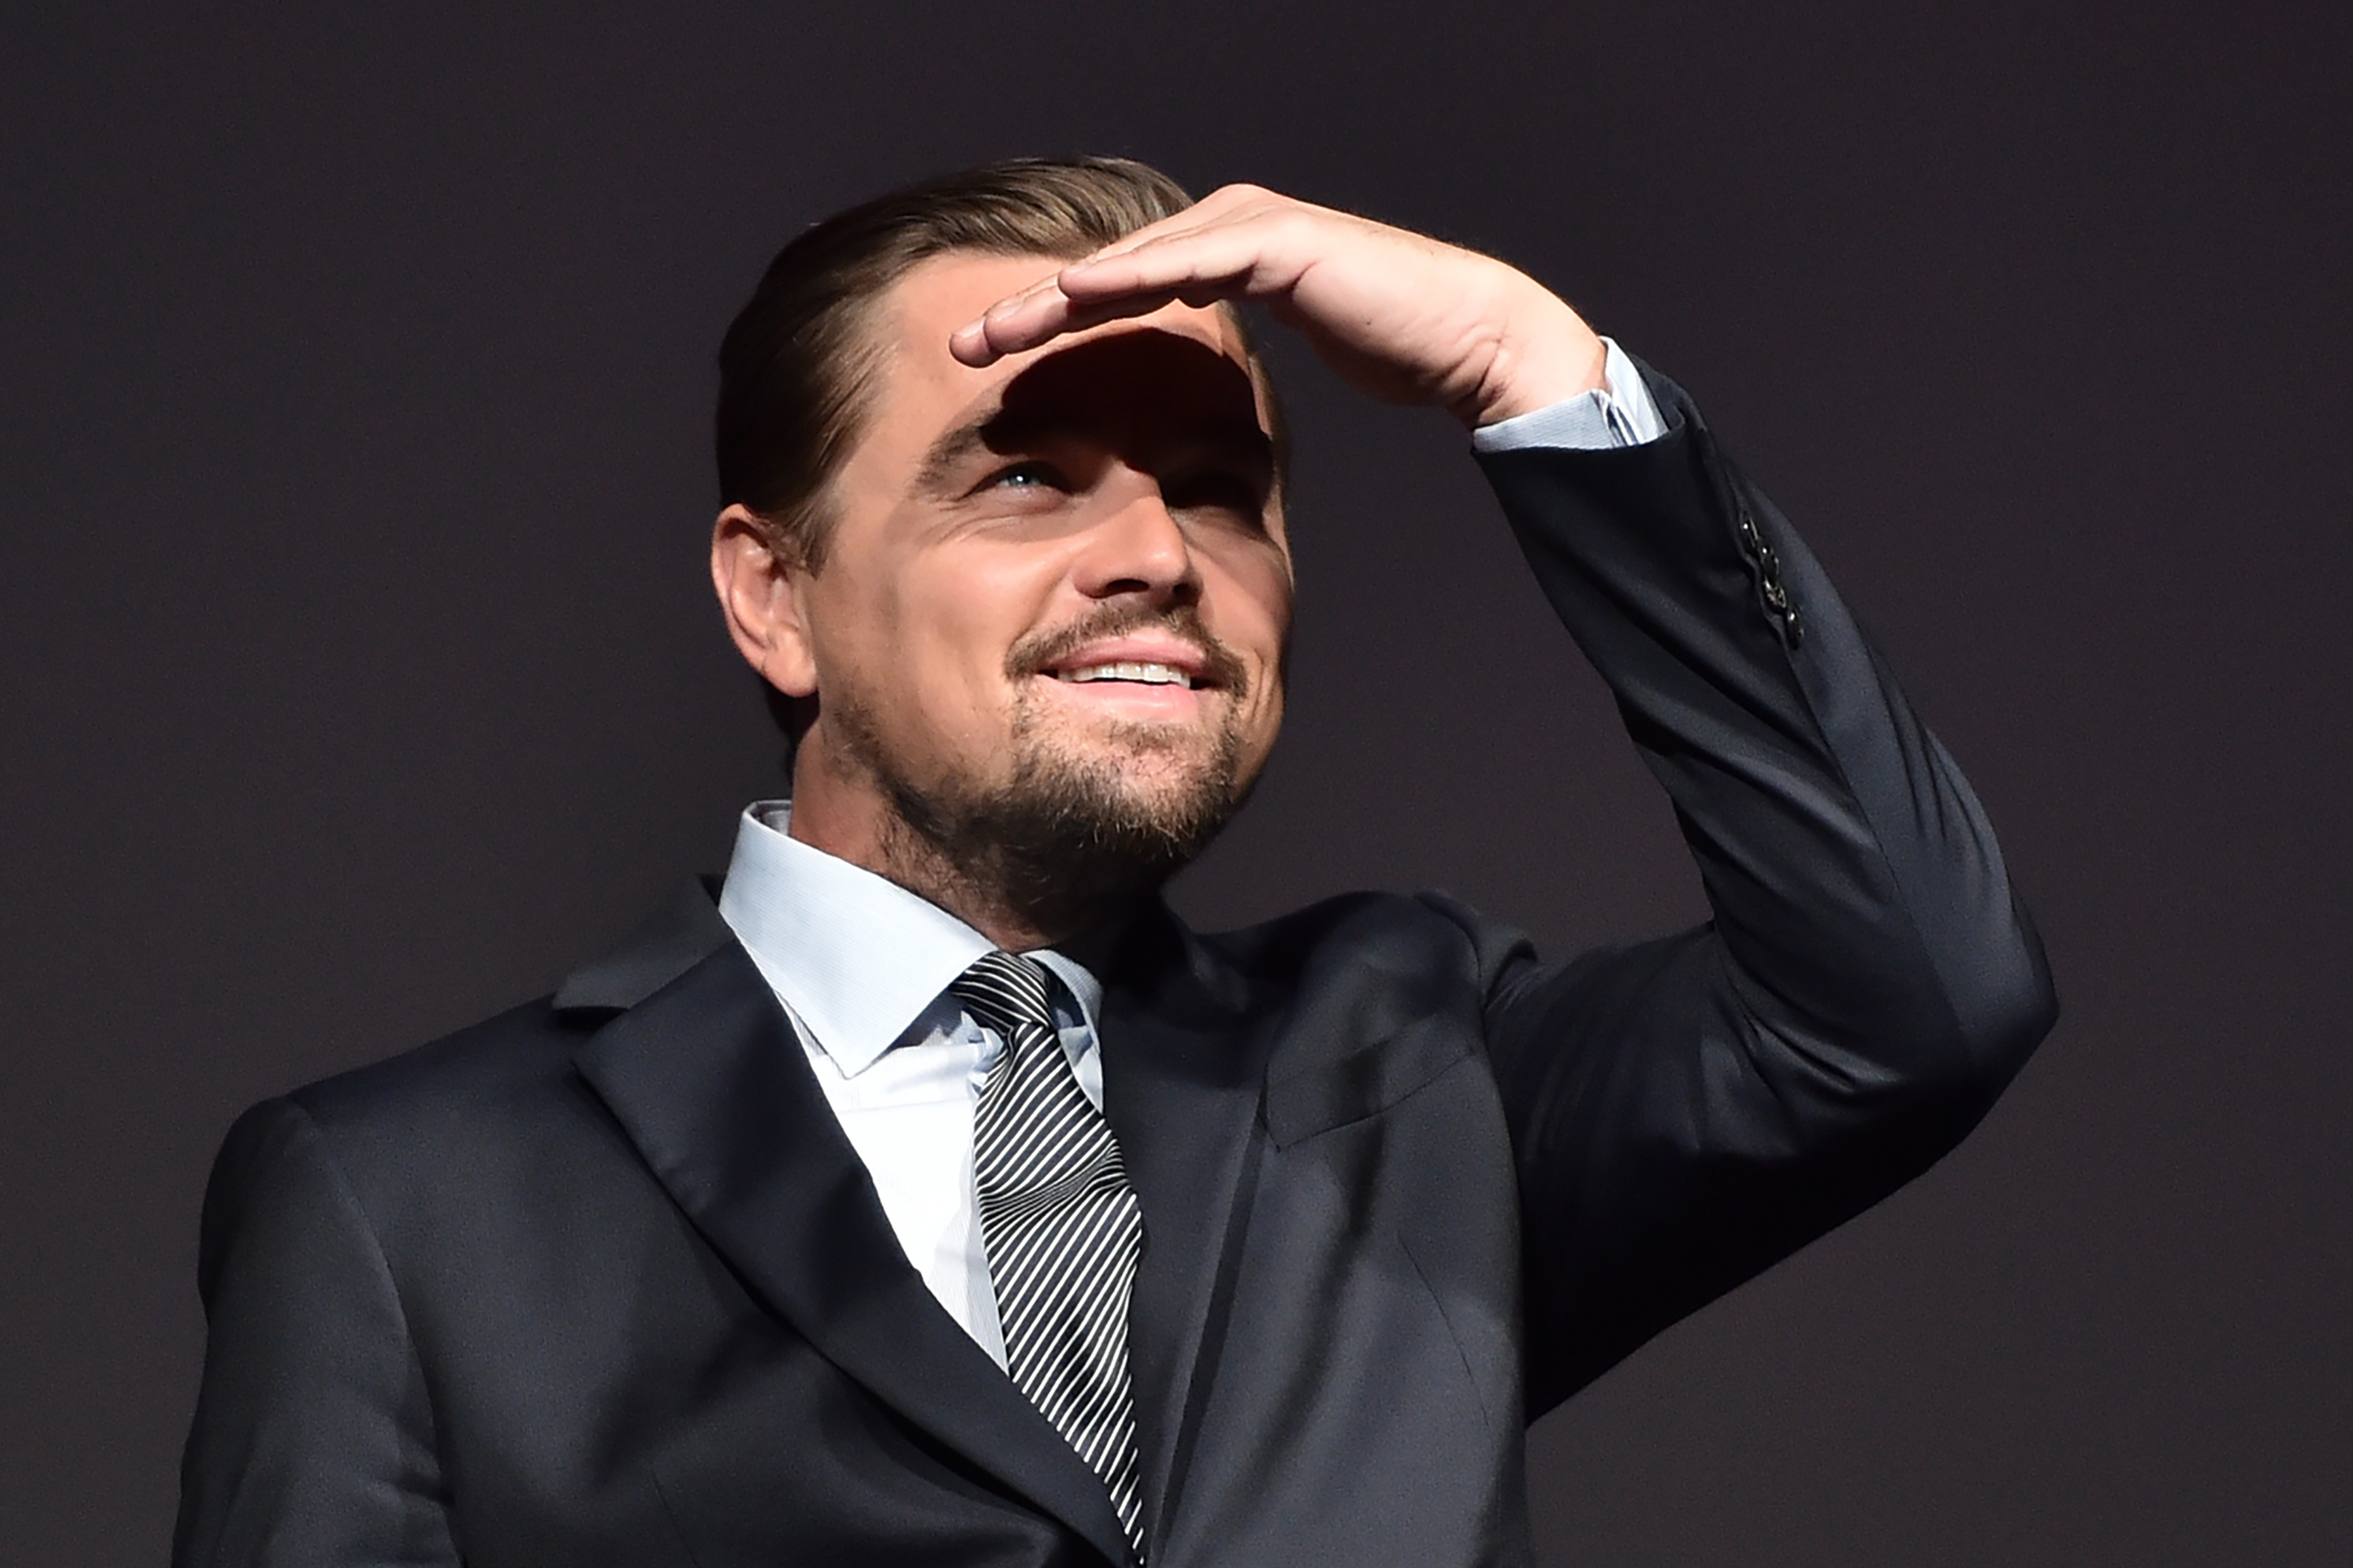 Leonardo DiCaprio lors de la première parisienne de "Before the Flood" le 17 octobre 2016 | Source : Getty Images